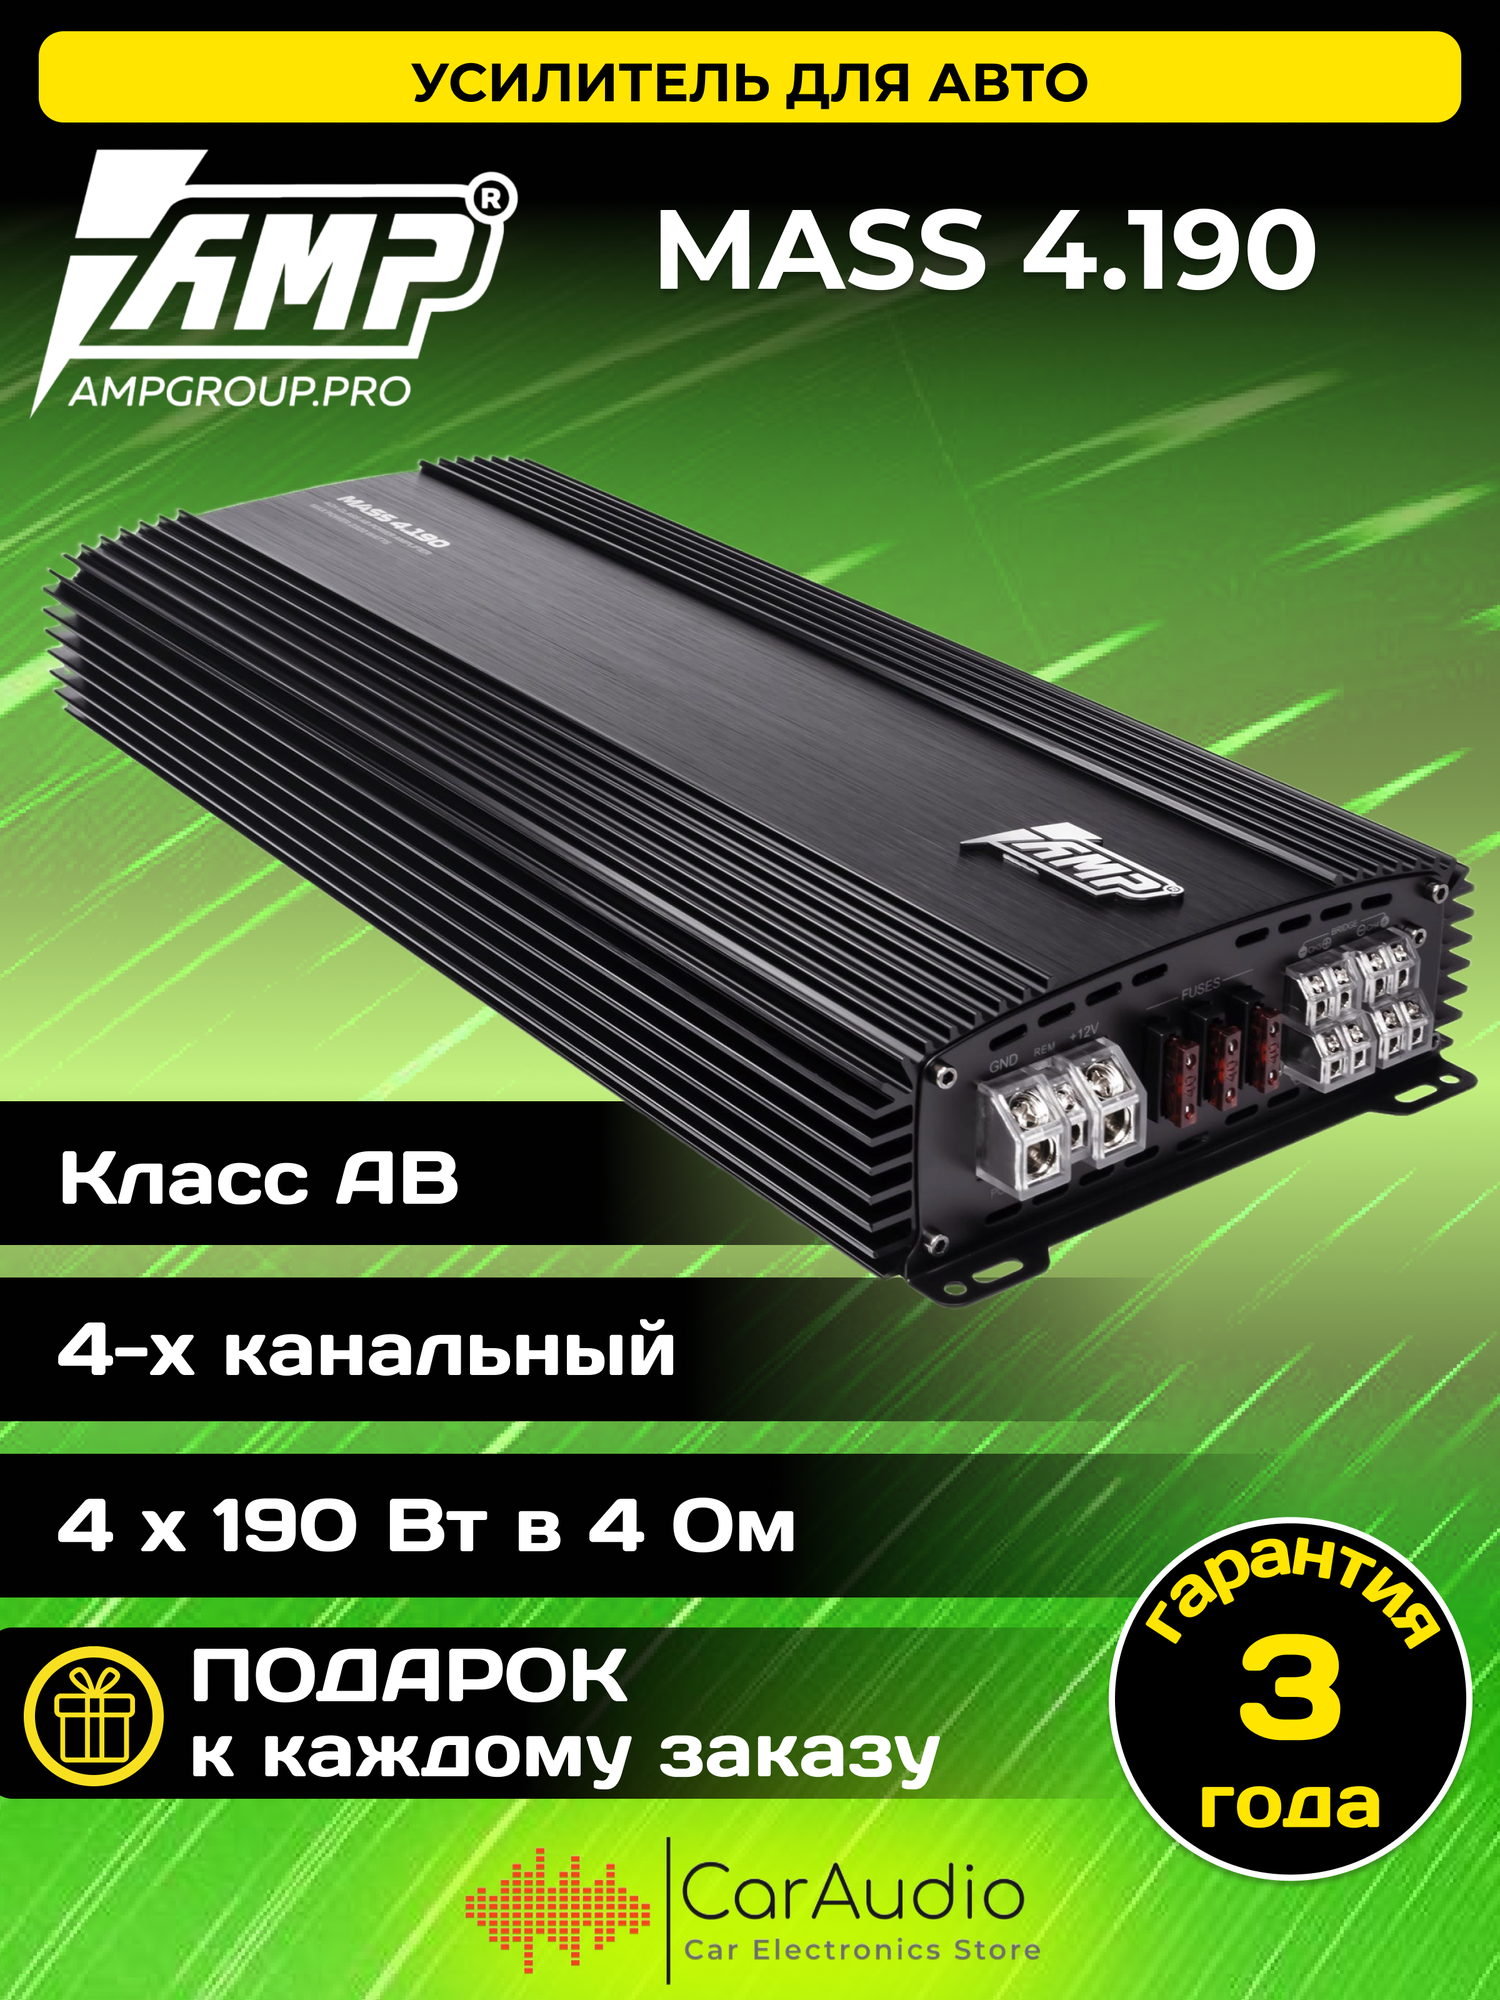 Автомобильный усилитель AMP MASS 4.190